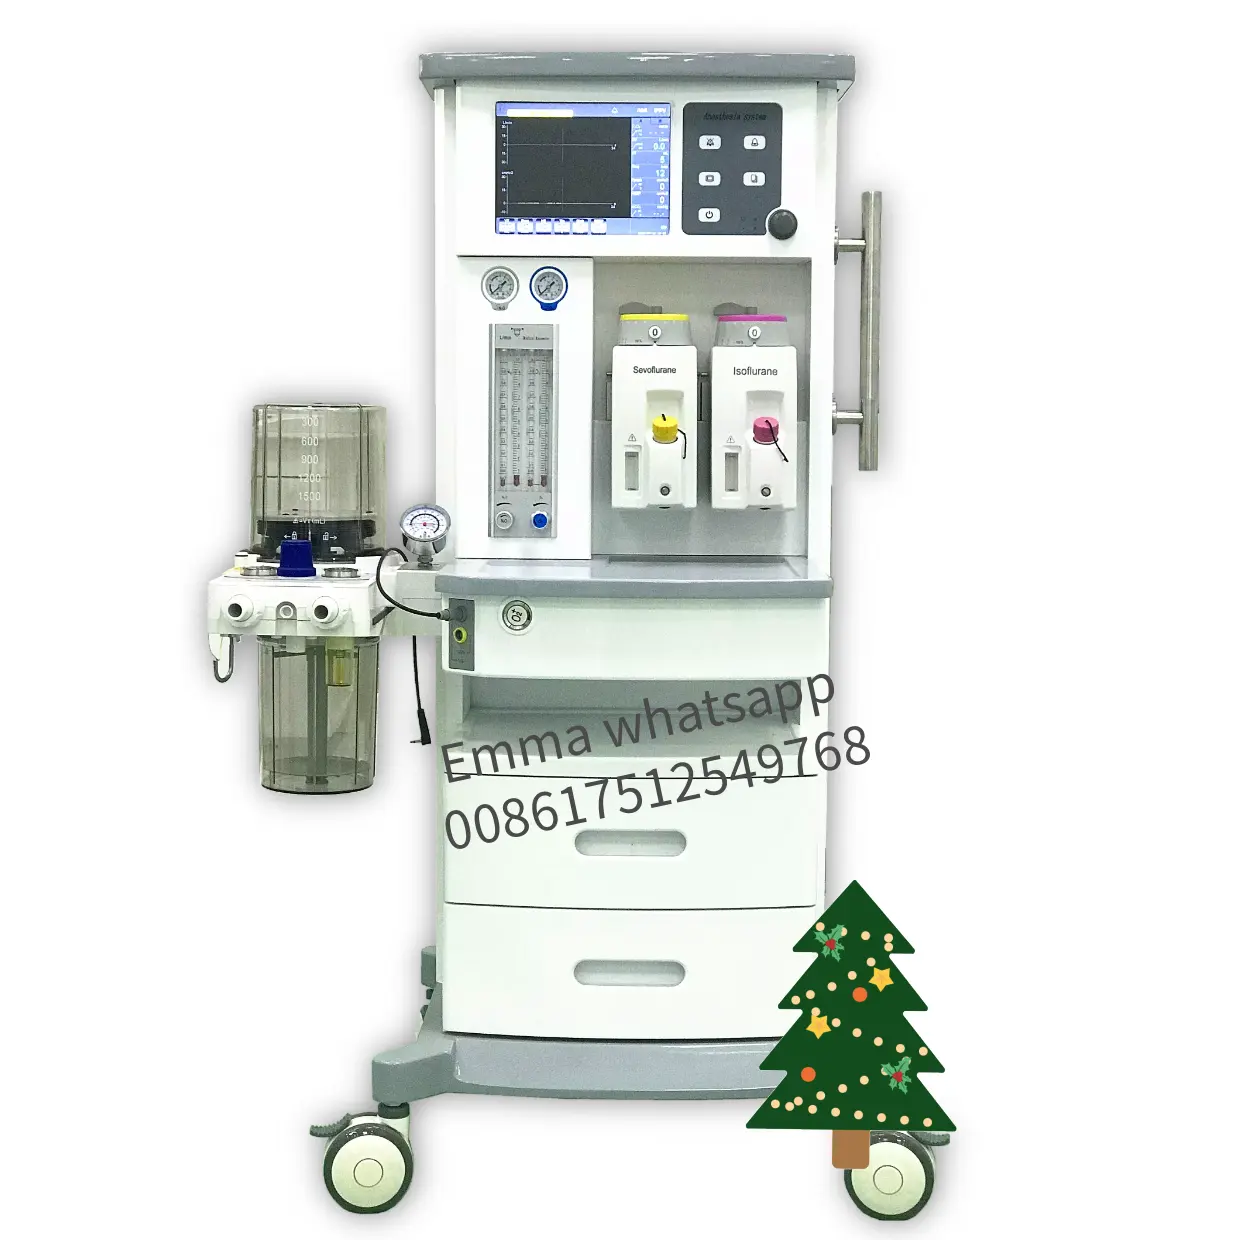 Care fusion S6500A Großbild-Krankenhaus Operations saal Ausrüstung Chirurgie Beatmung Anästhesie Beatmung gerät Workstation Maschine